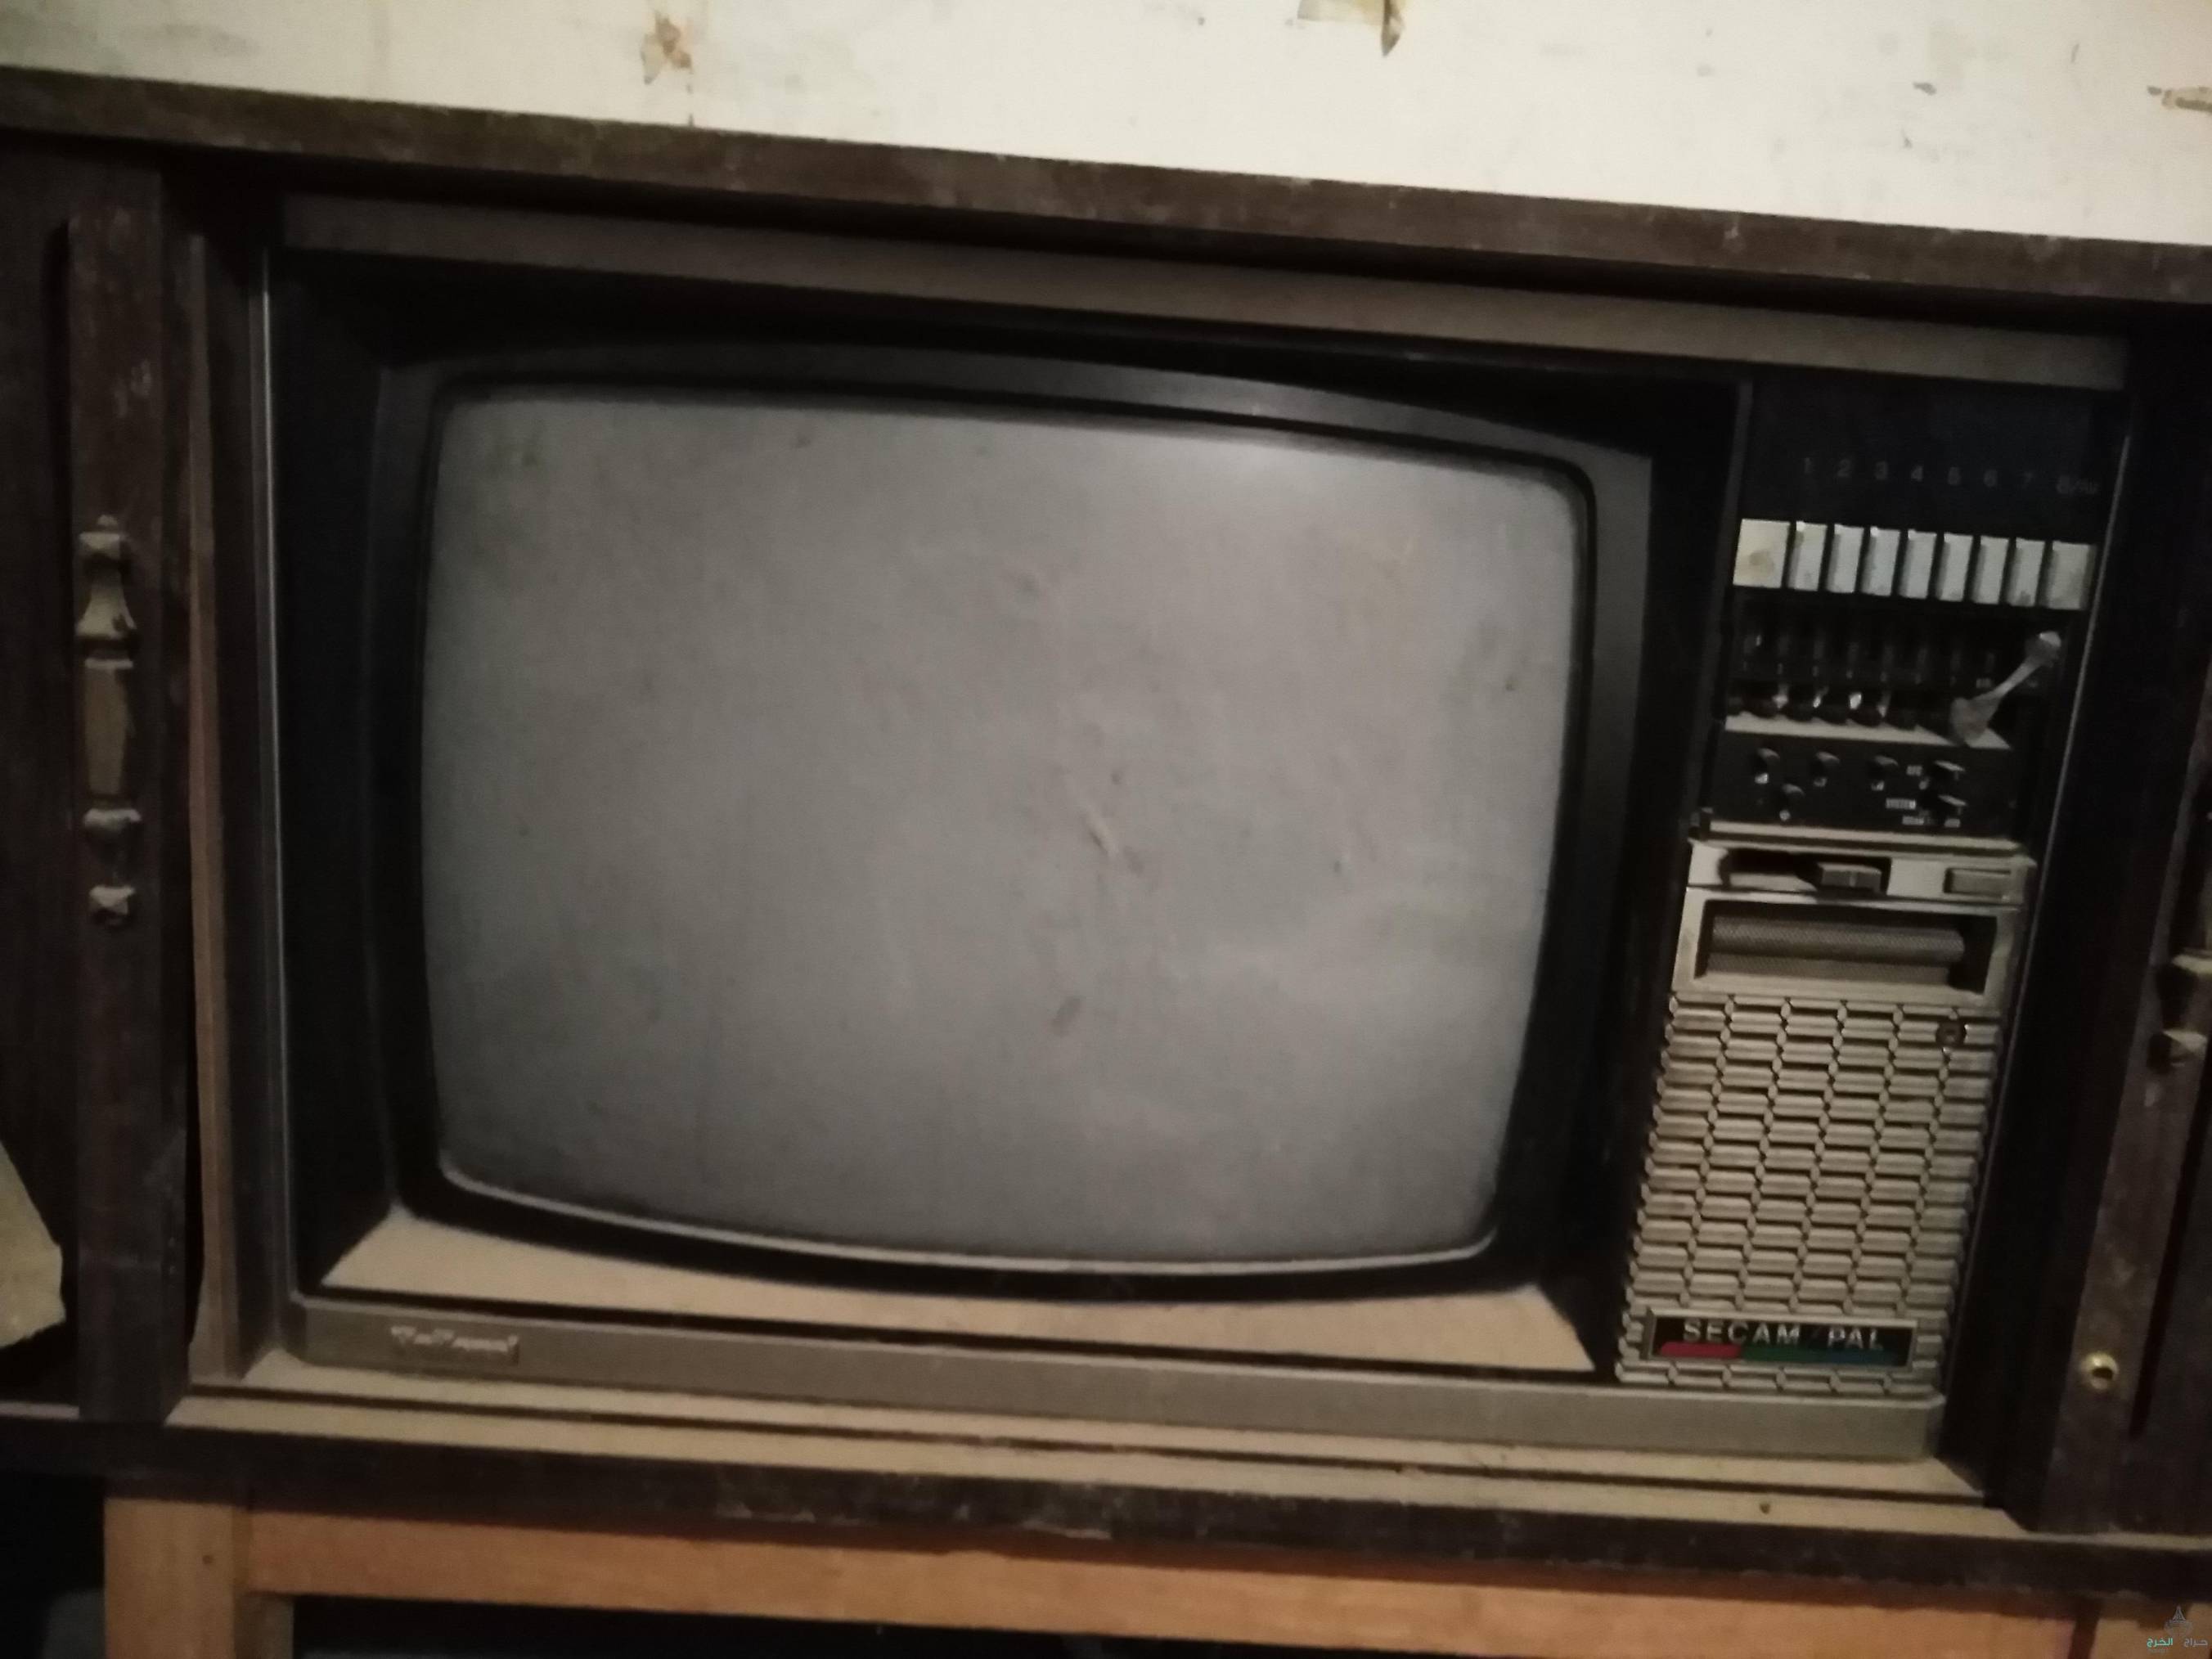 تلفزيون قديم خشبي بحاله ممتاز ناشيونيول